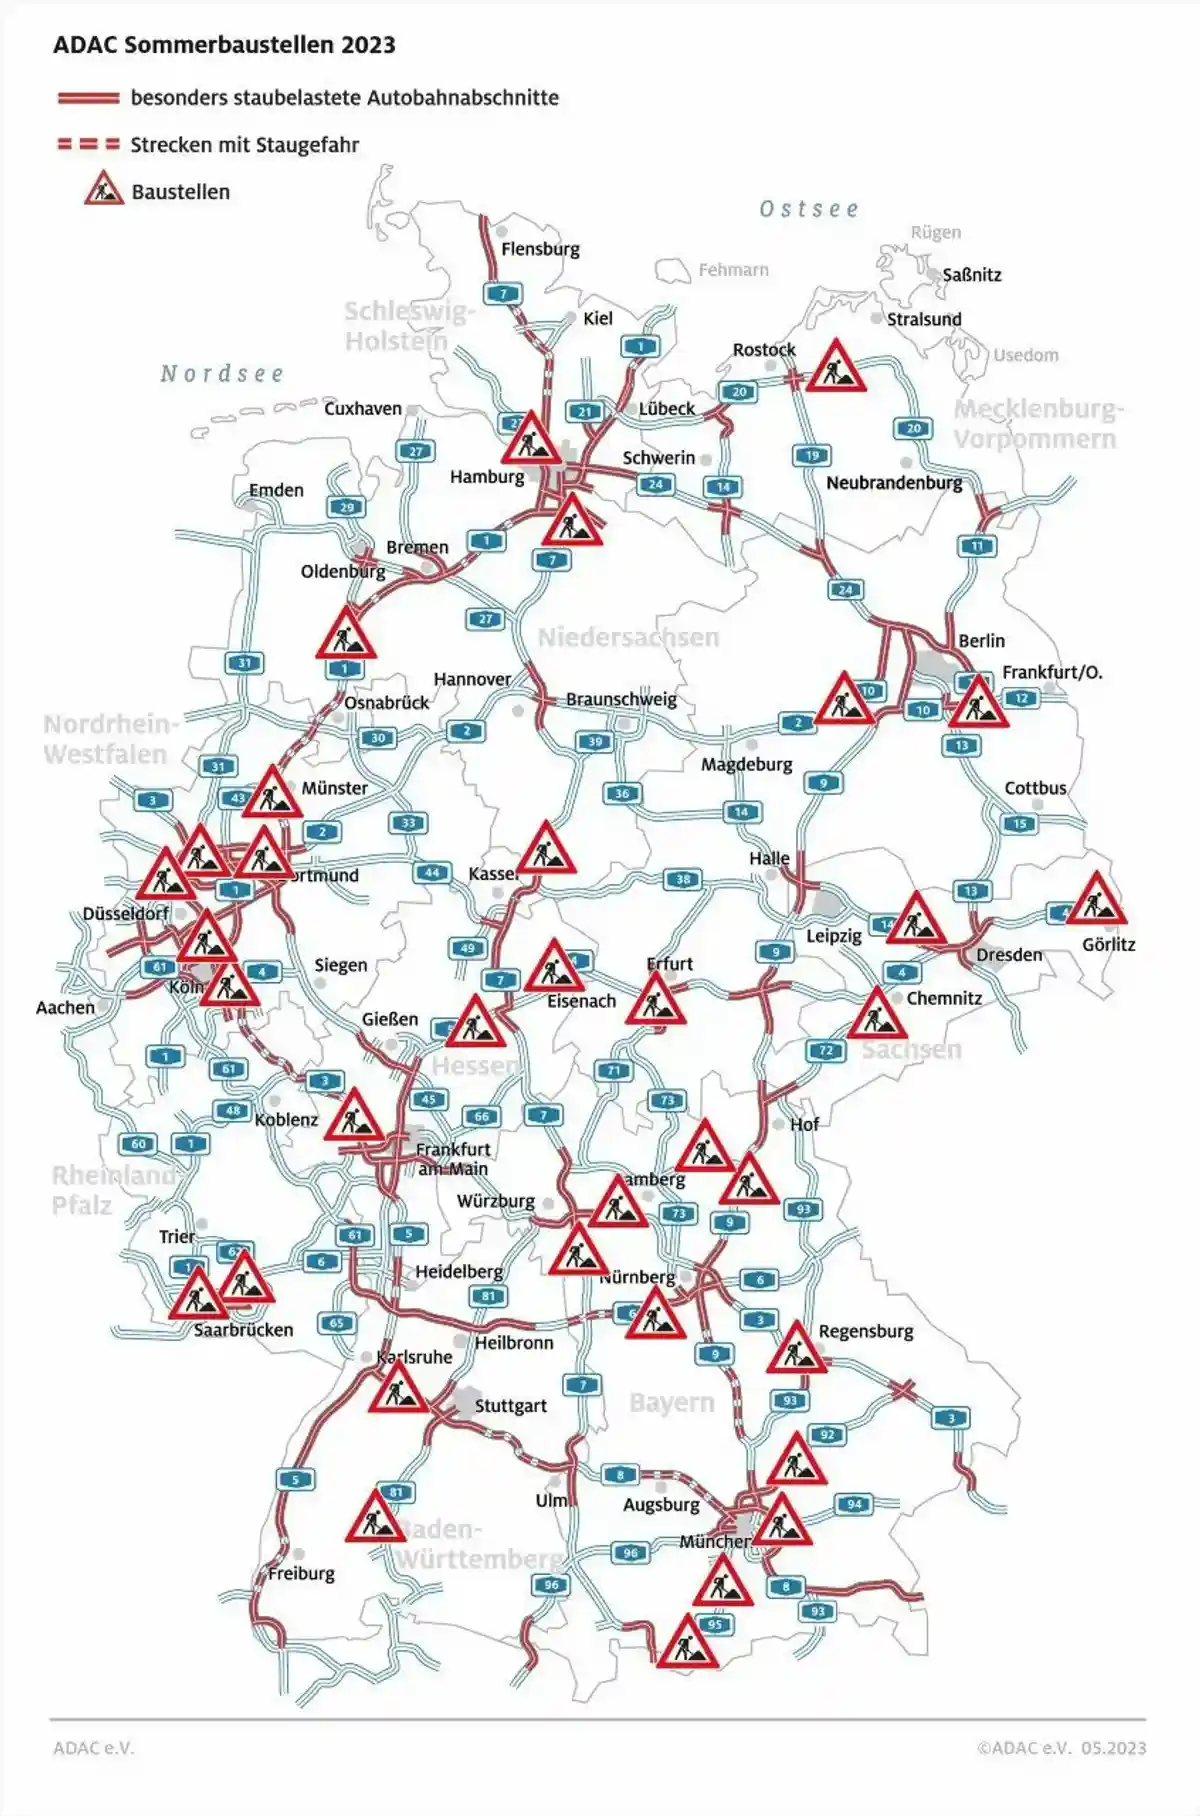 Строительные работы и ожидаемые пробки на дорогах праздничные выходные в Германии. Фото: ADAC/DPA